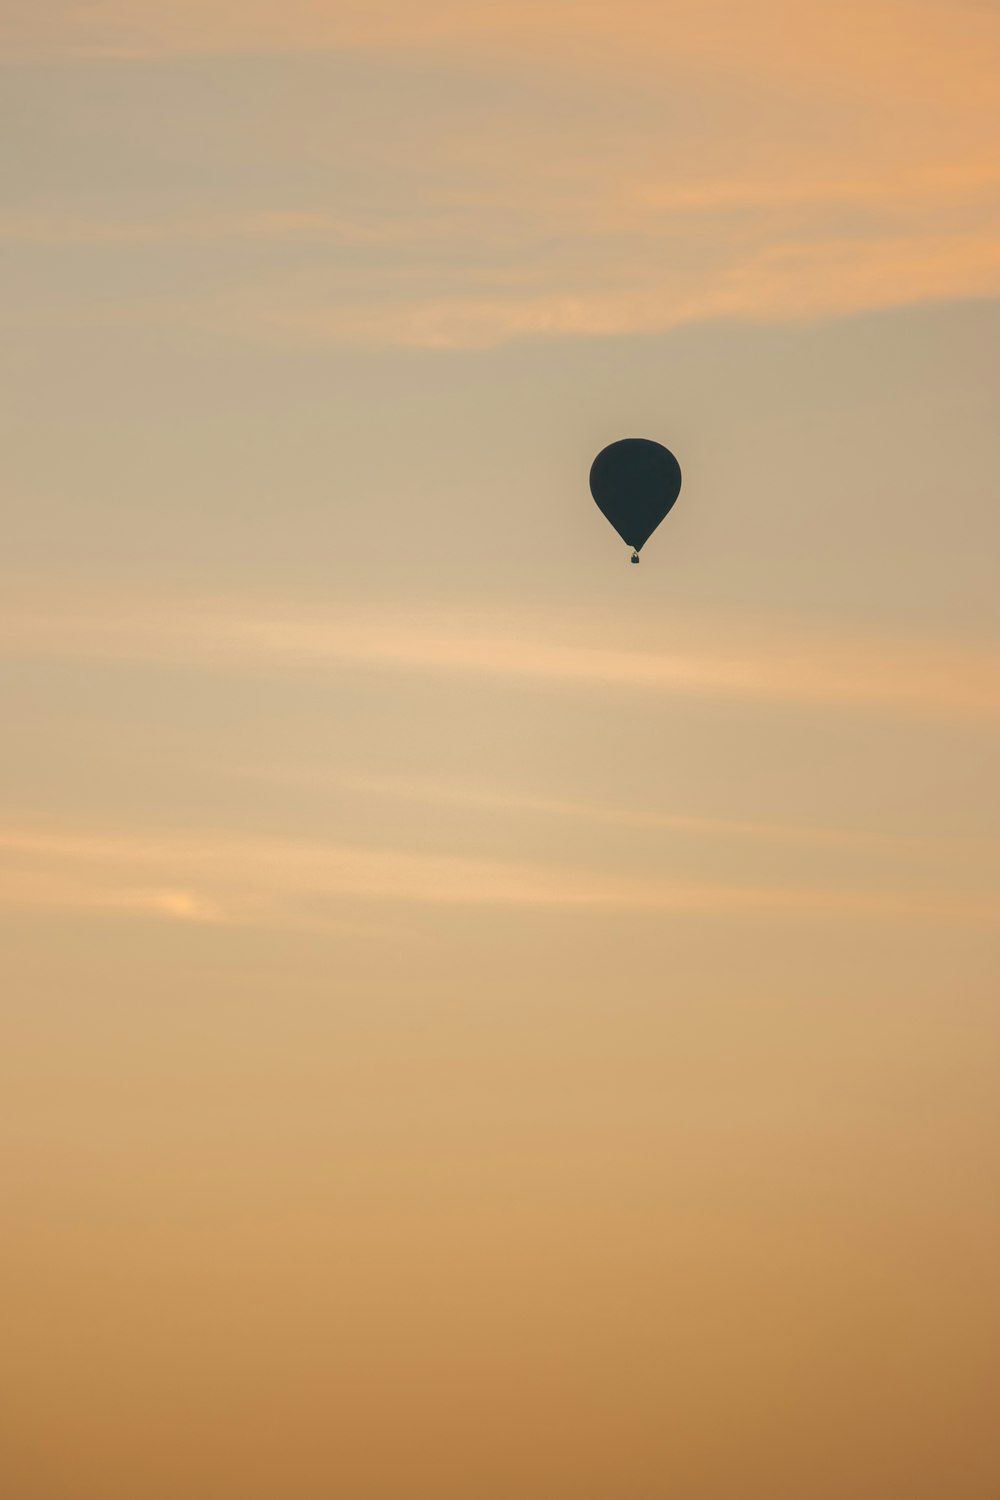 Un globo aerostático volando en el cielo